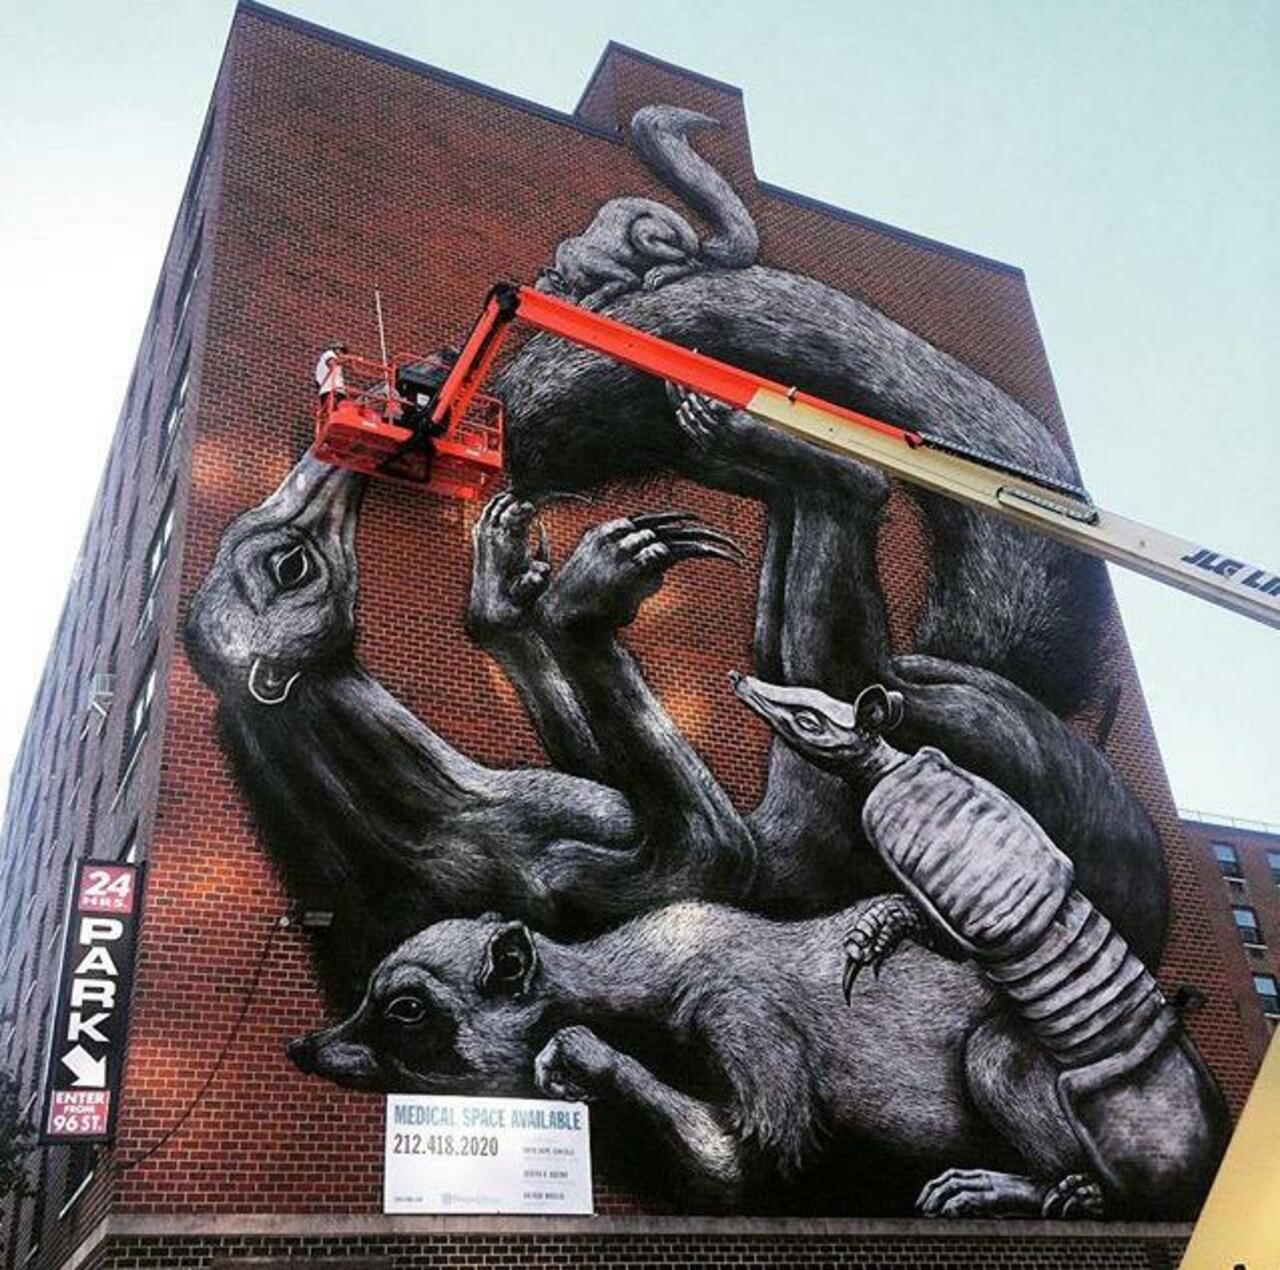 Street Art in progress by ROA in NYC

#art #graffiti #mural #streetart http://t.co/haAqn76j9k